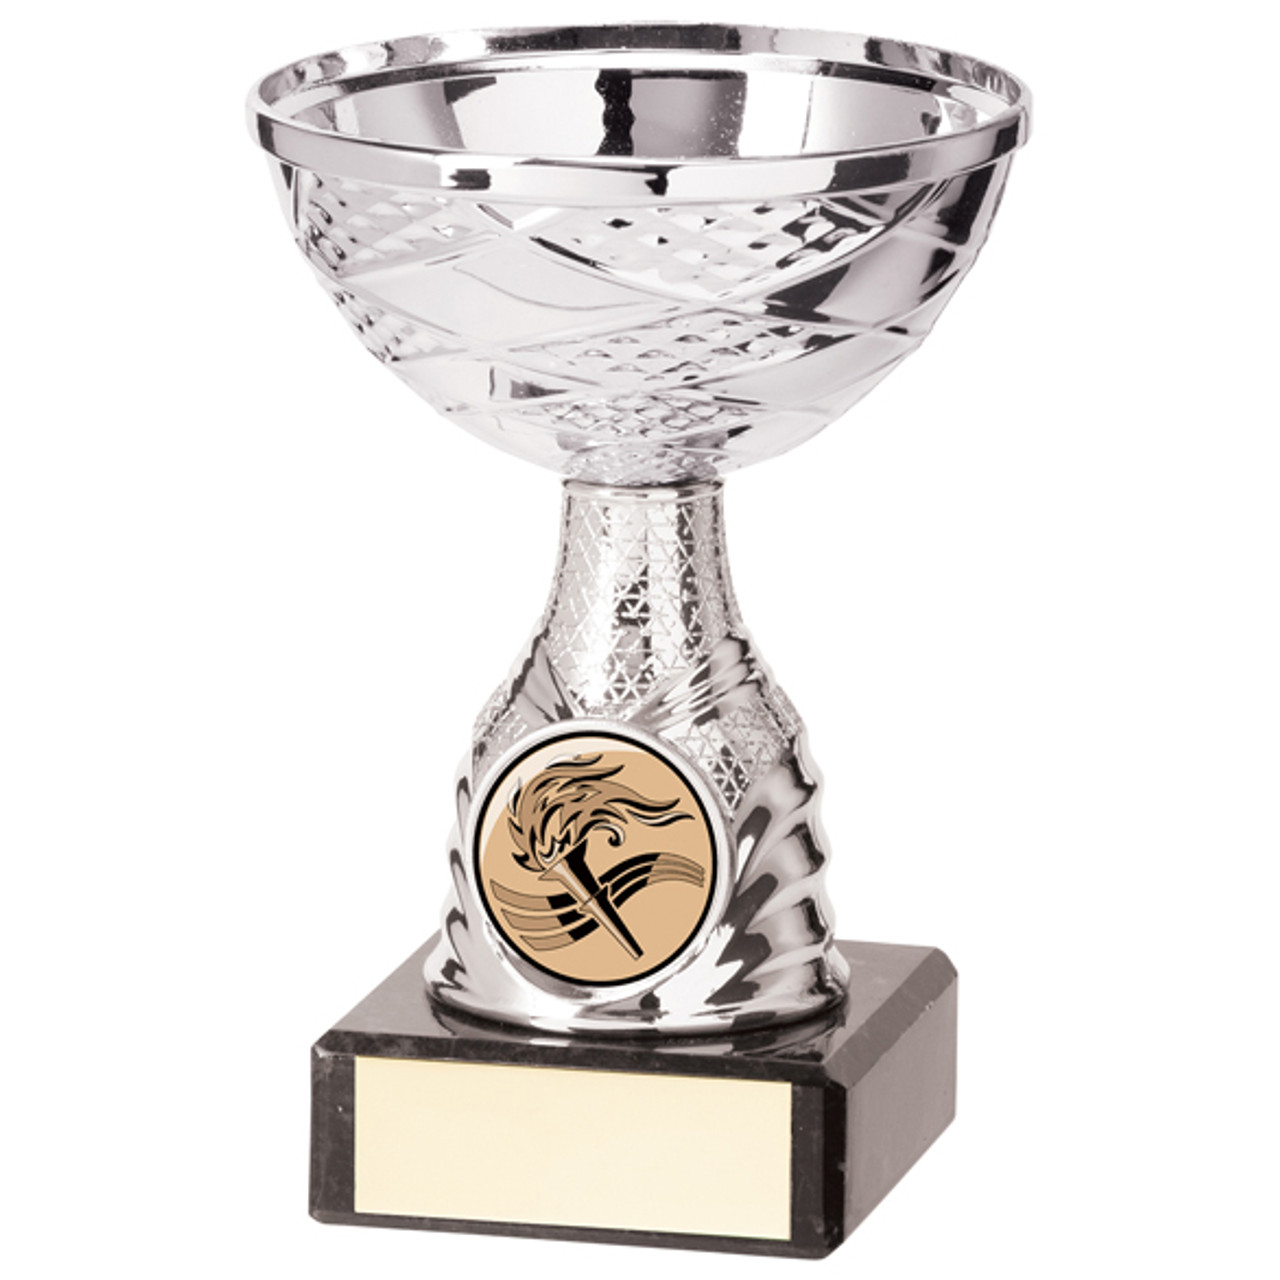 HACIENDA Silver Cup Series